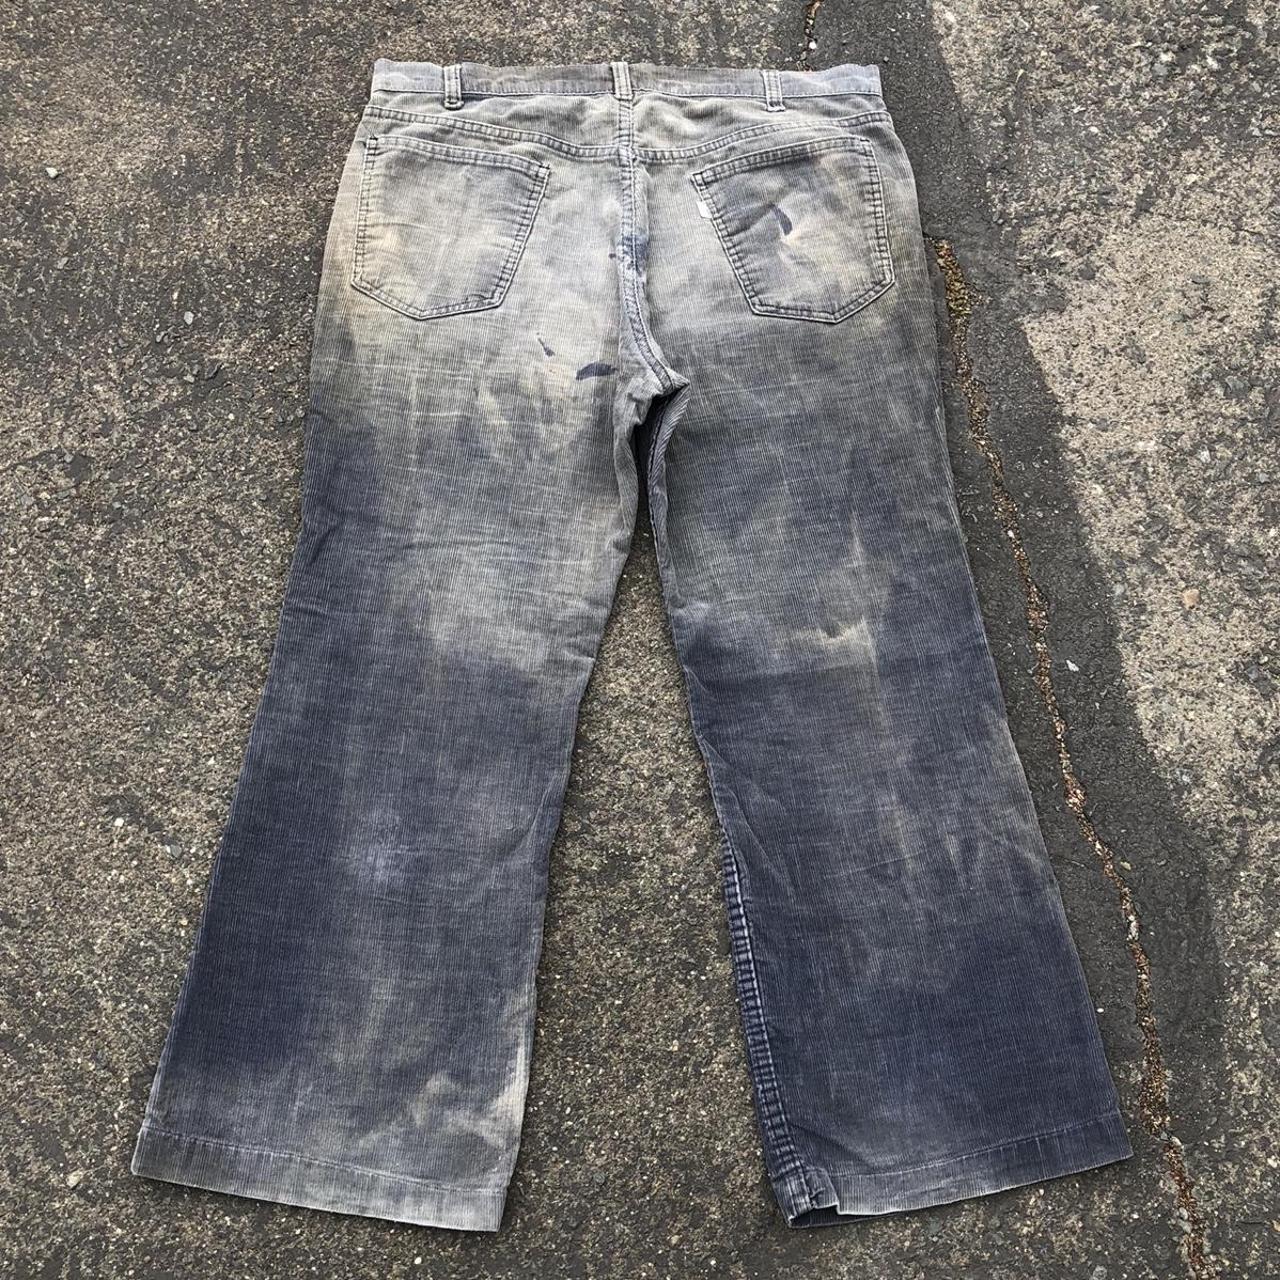 Vintage 70s sun faded Levi’s corduroy jeans size 36... - Depop